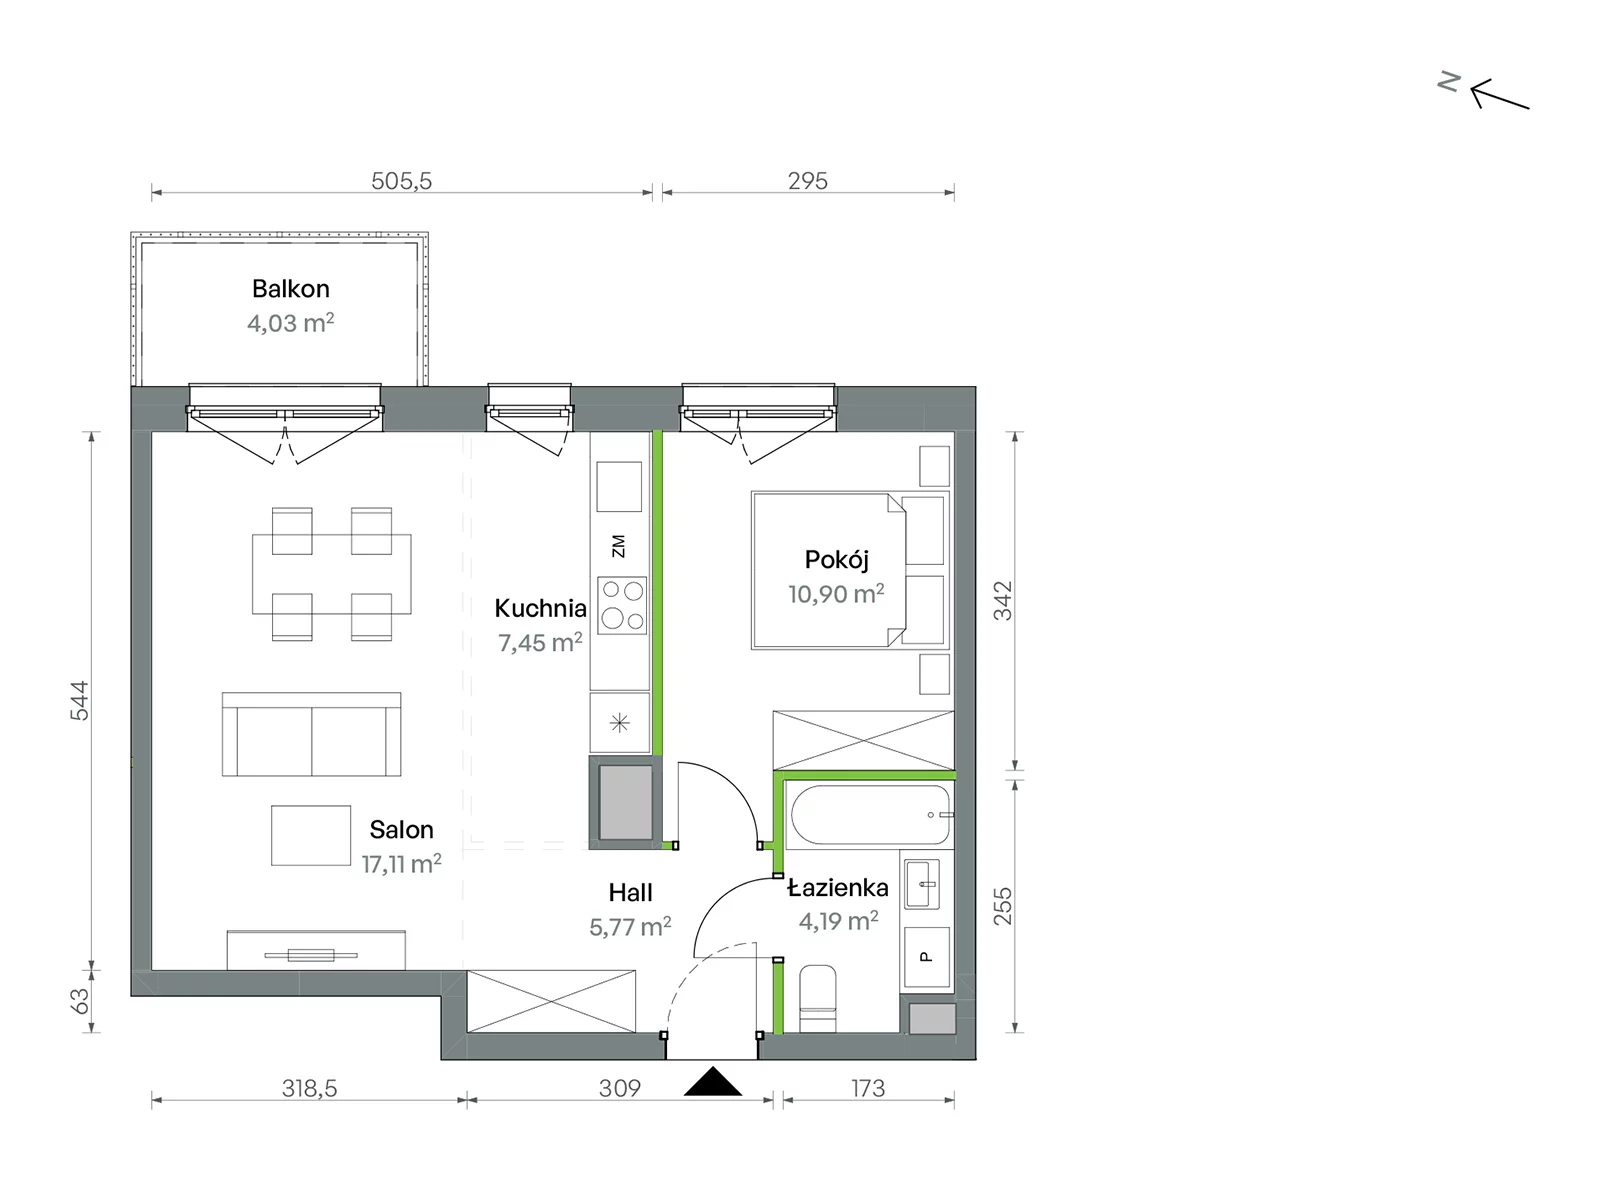 Mieszkanie 45,42 m², piętro 2, oferta nr 1/A/2/49, Oliwska Vita etap II, Warszawa, Targówek, Bródno, ul. Oliwska 11